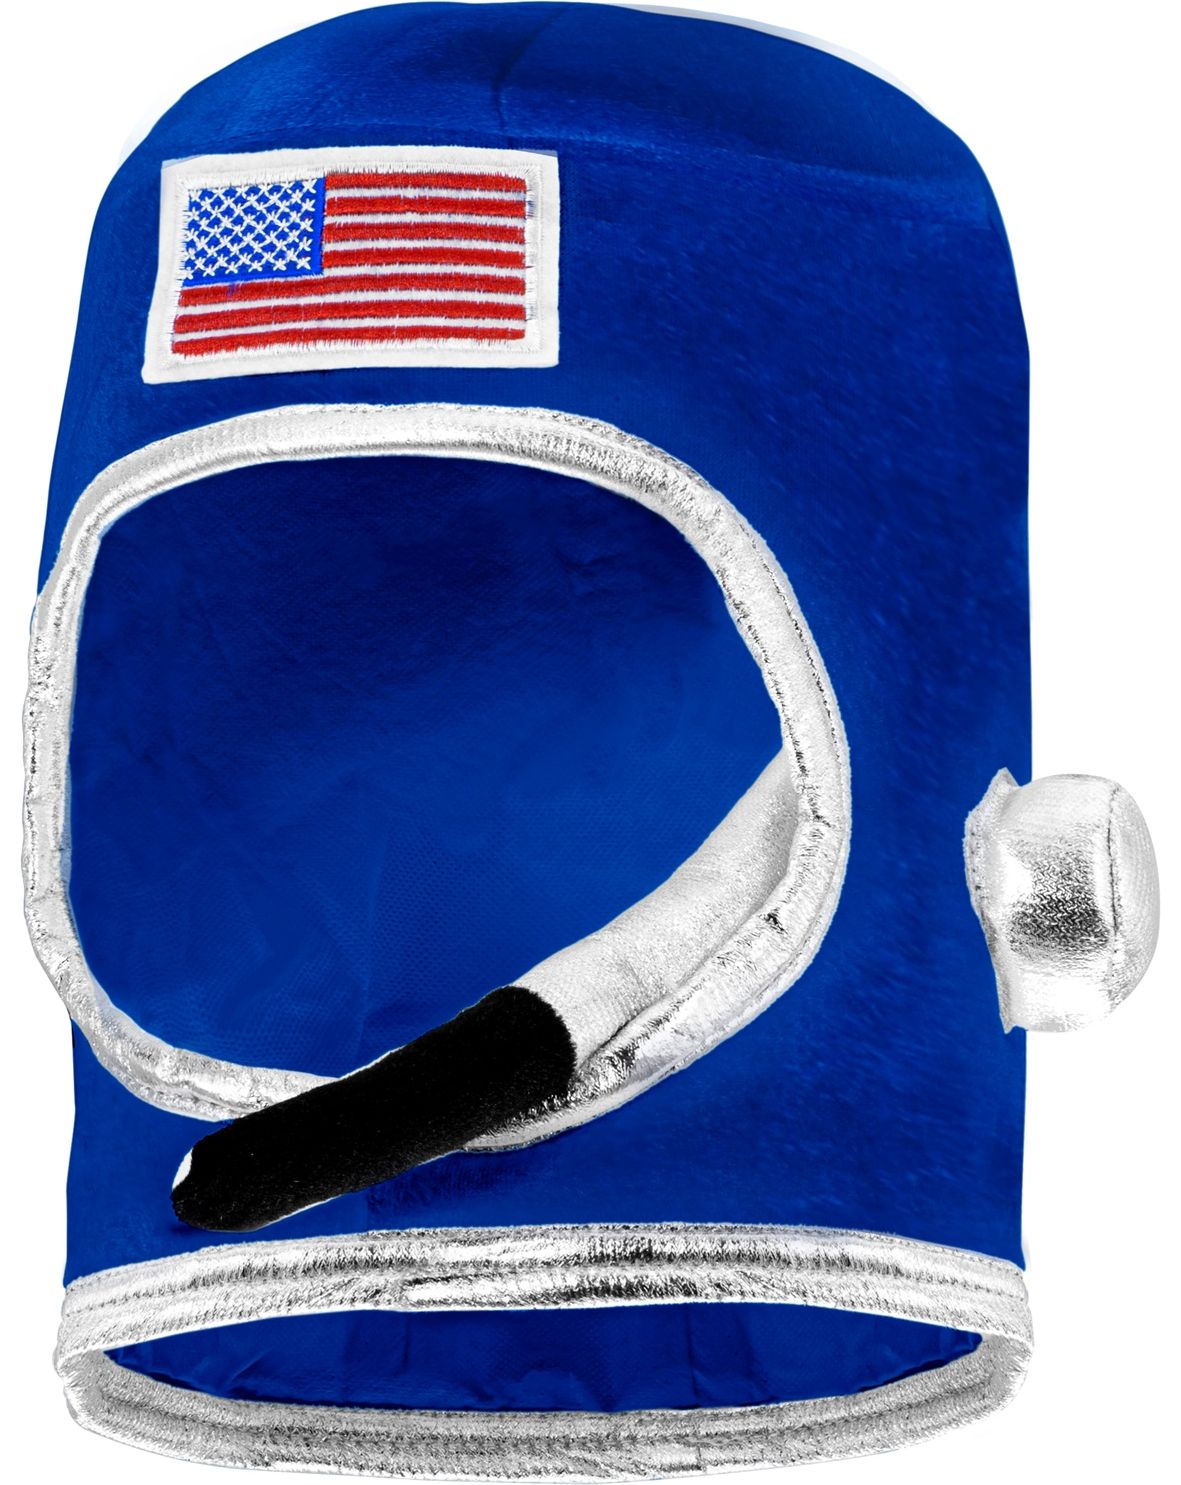 Blauwe stoffen astronaut helm